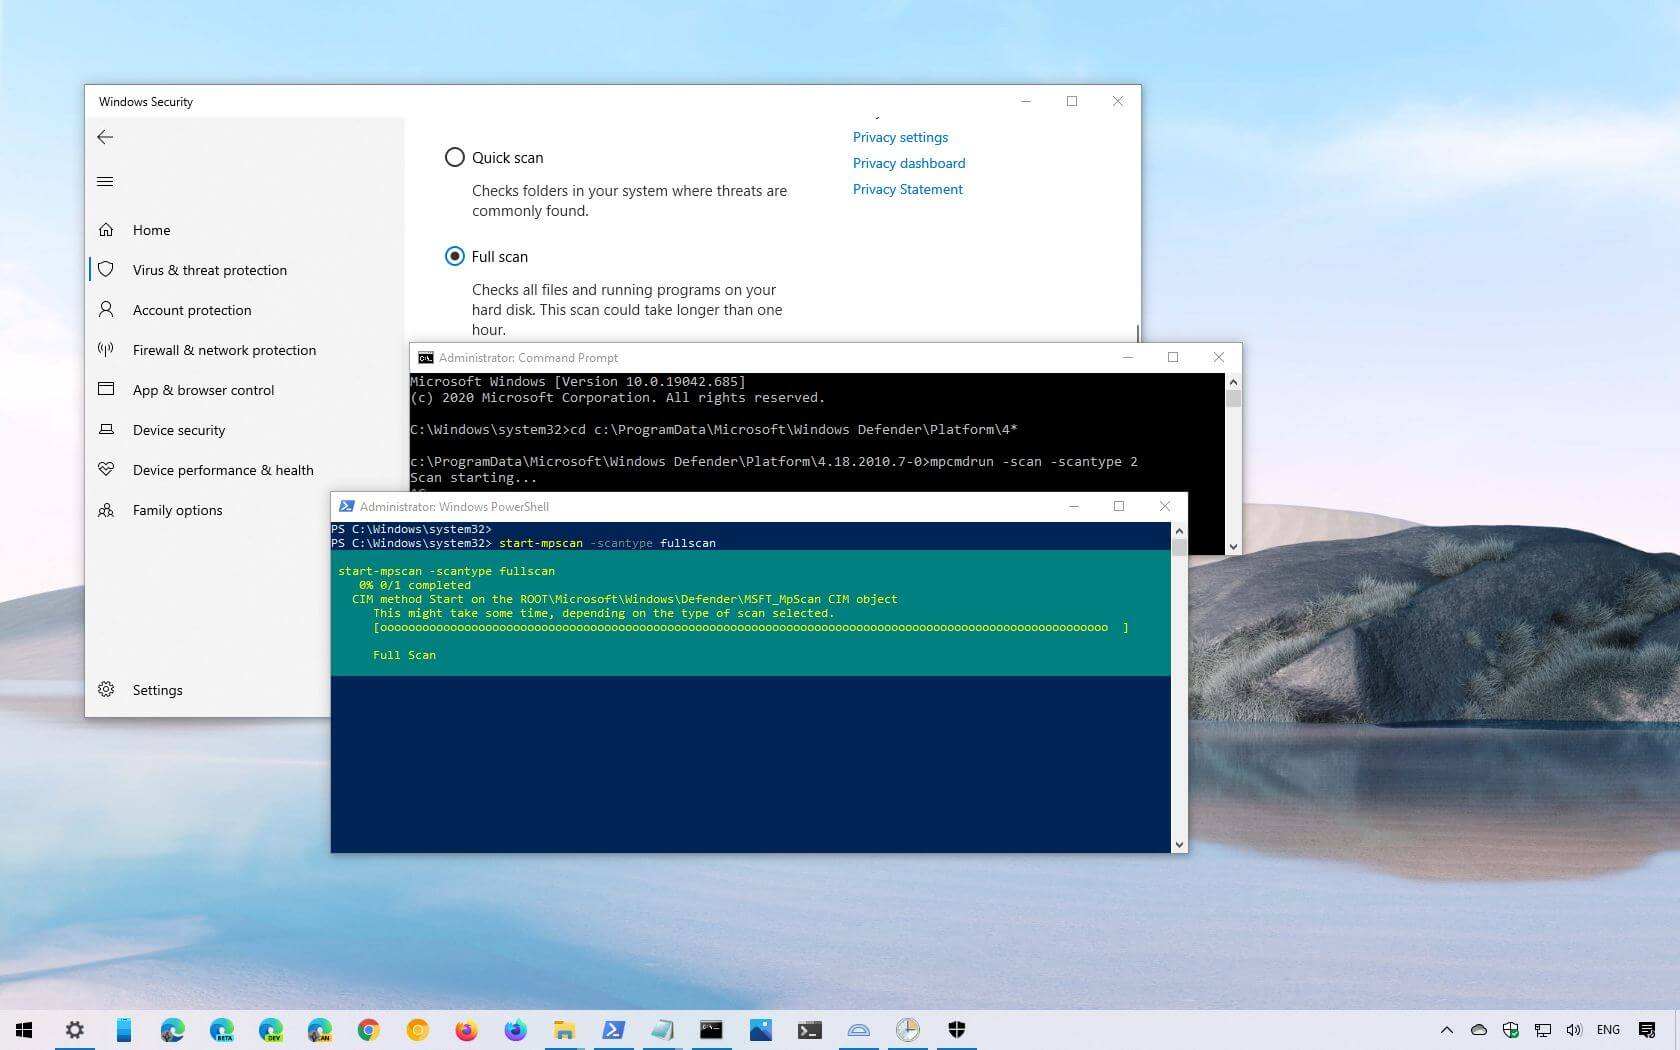 Täyden virustarkistuksen suorittaminen Microsoft Defender Antivirus -sovelluksella Windows 10:ssä